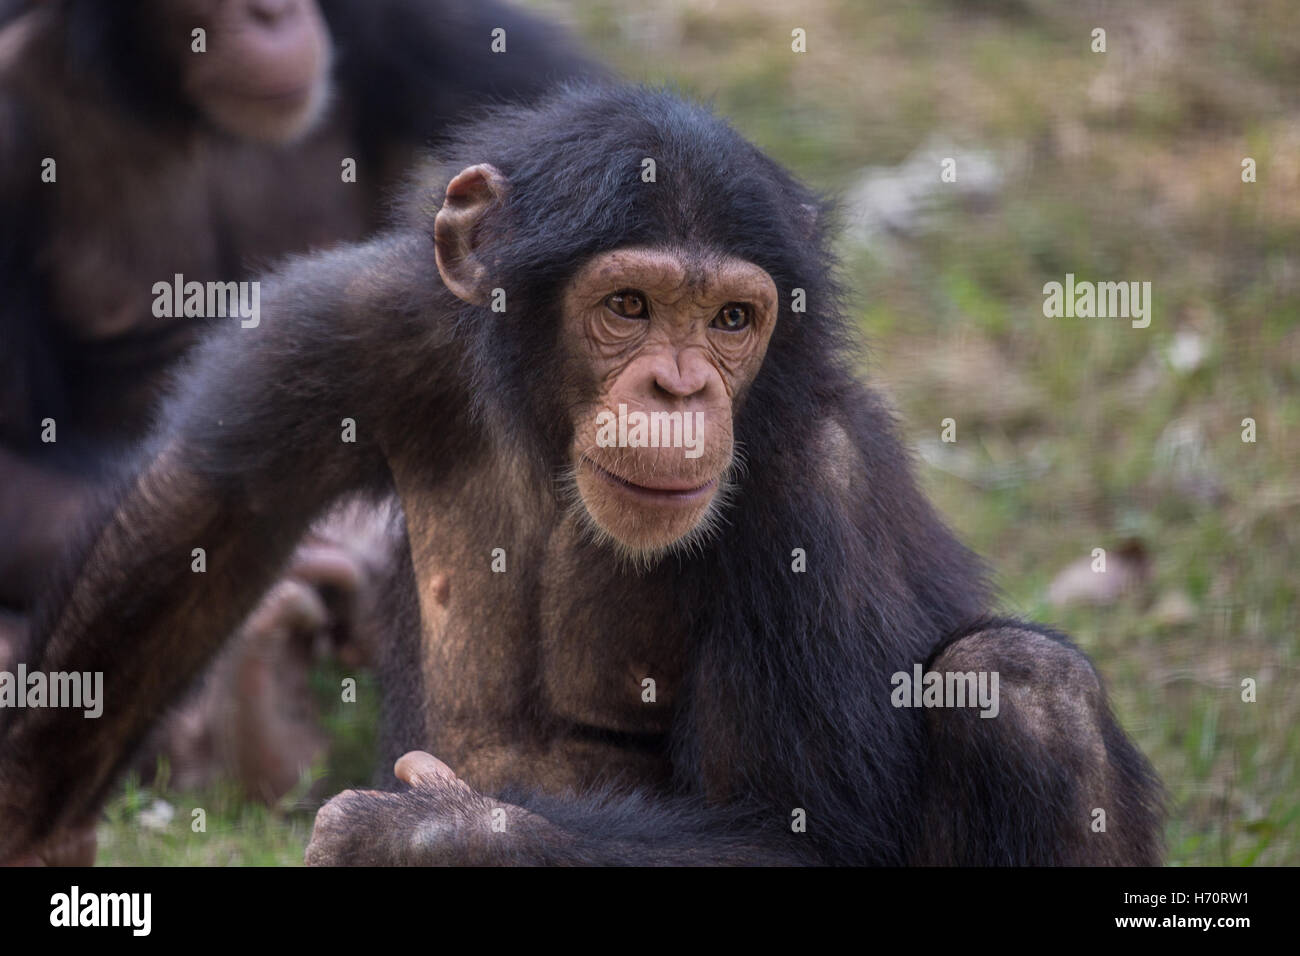 El chimpancé en un zoo - retrato closeup shot. son considerados como los más inteligentes de todas las especies de primates (mono). Foto de stock